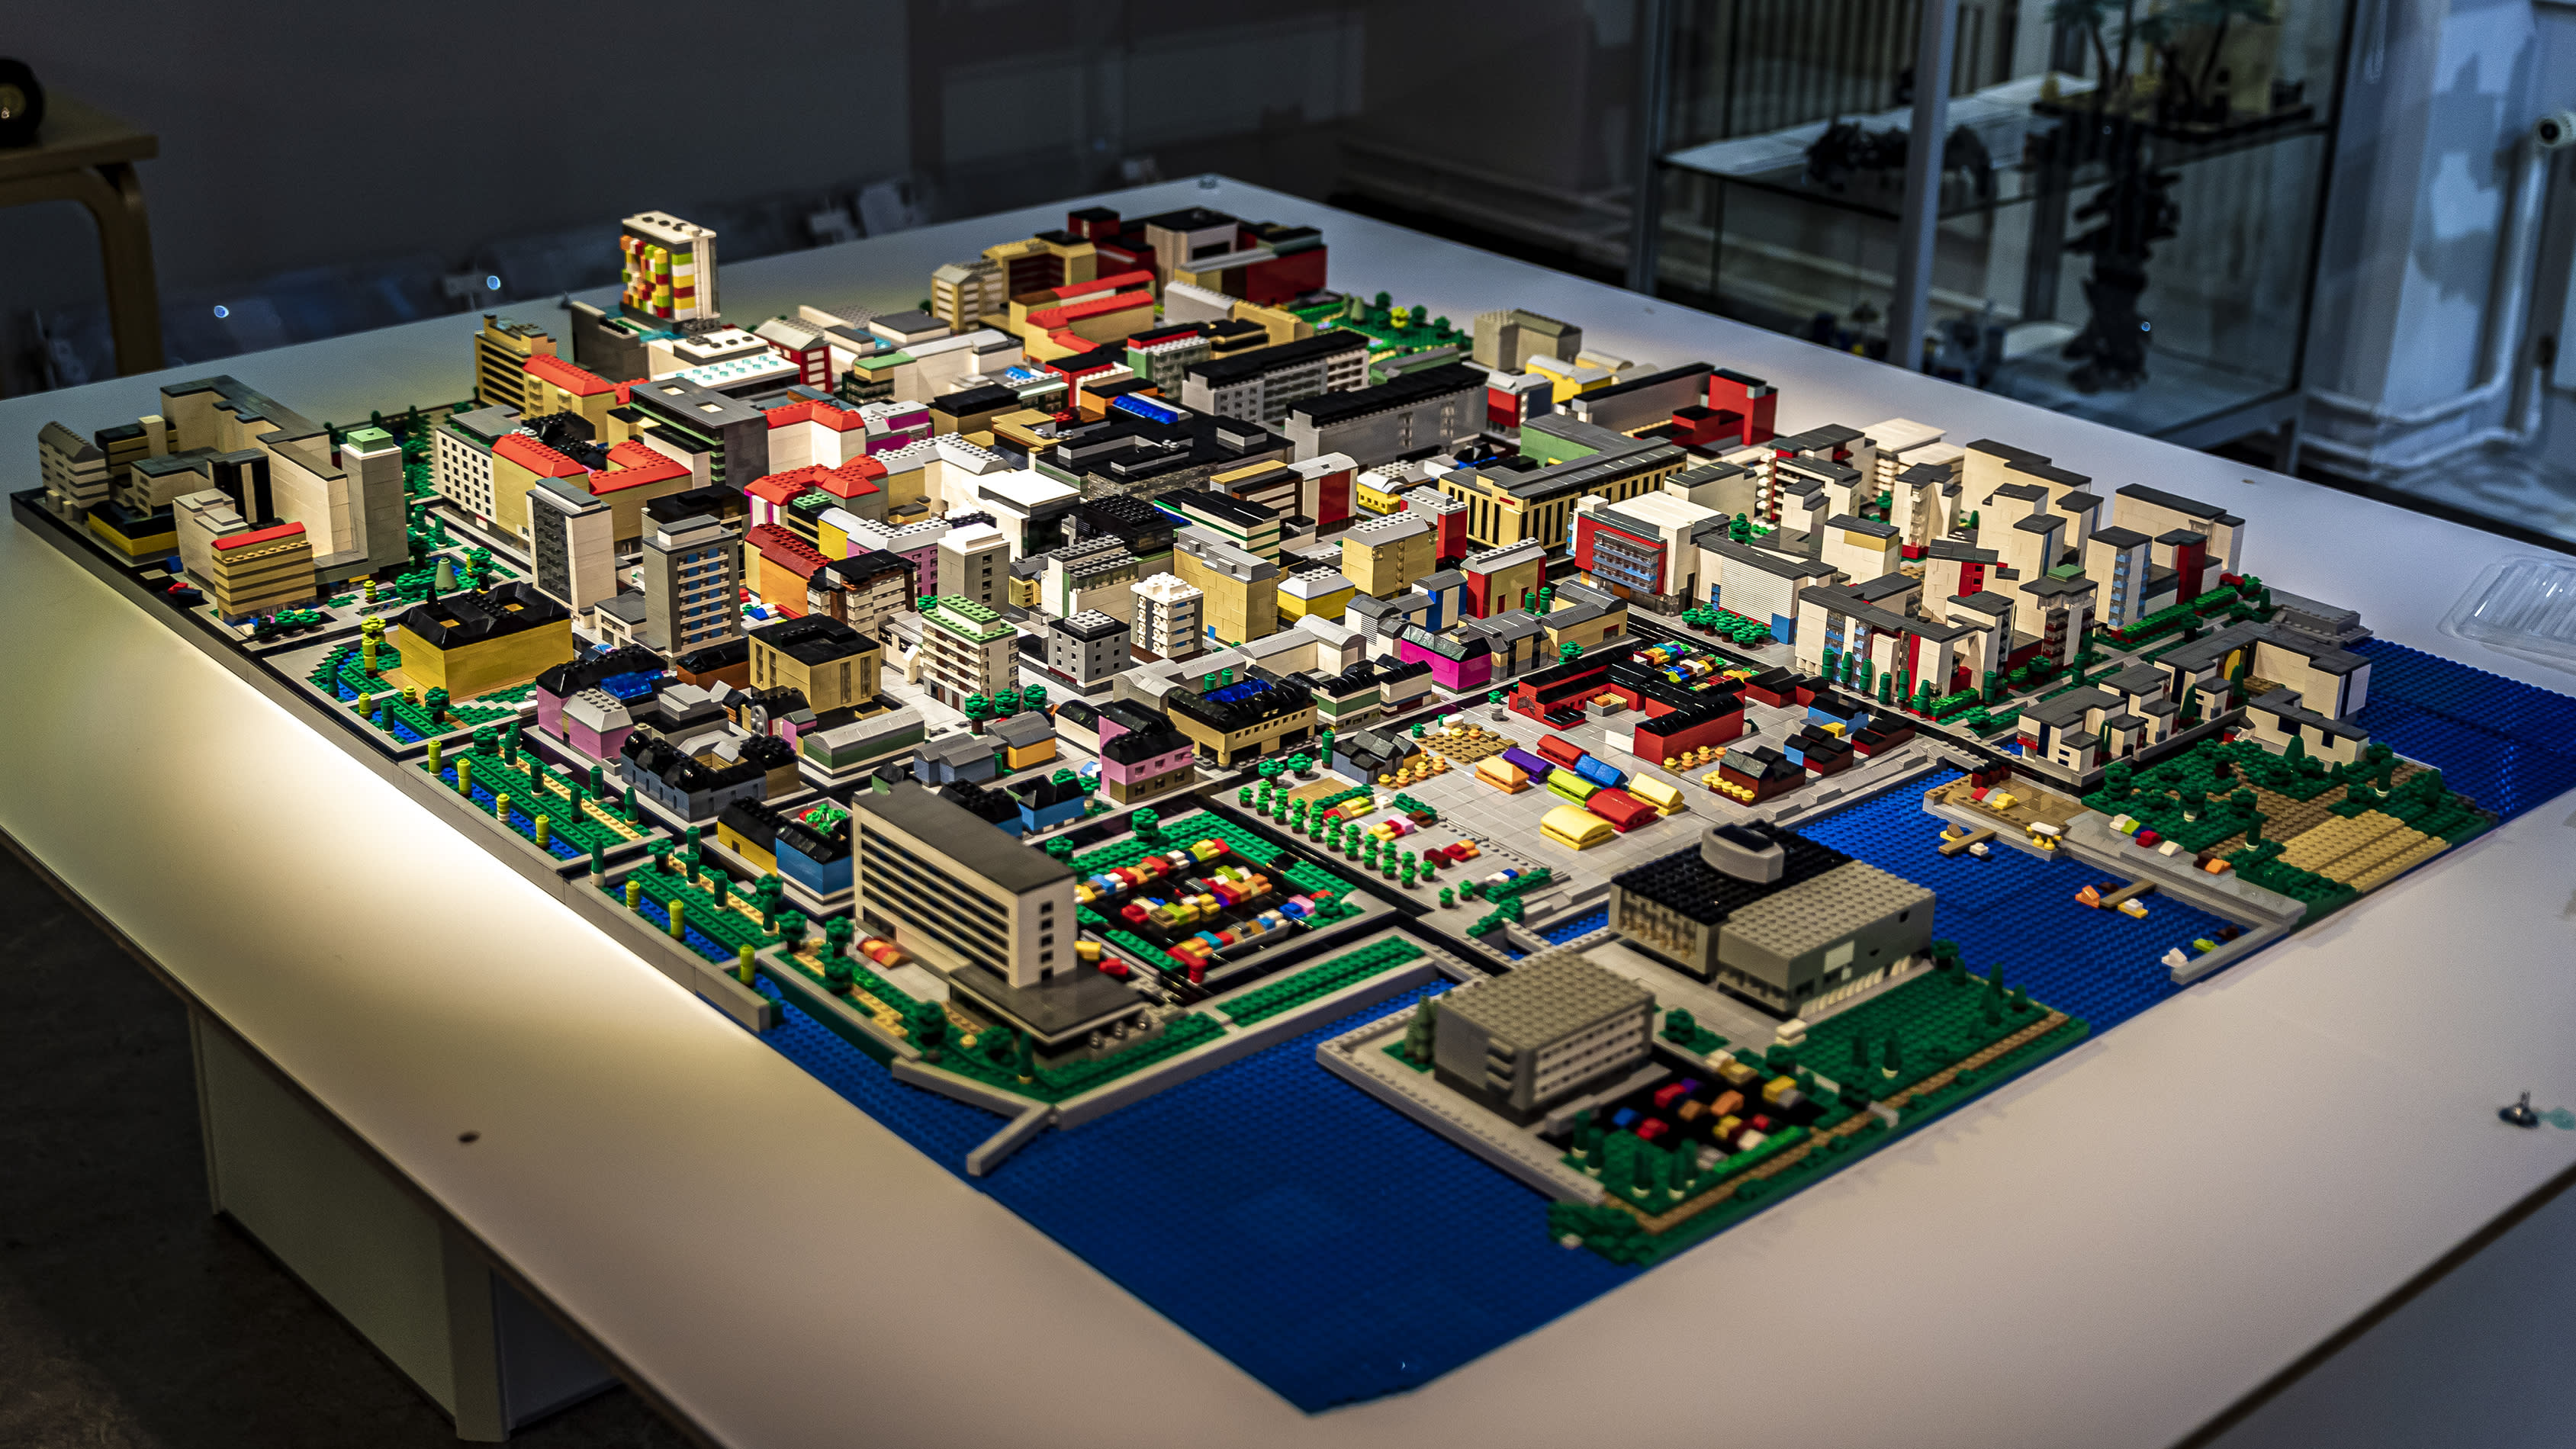 Tuomas Kukkamaa rakensi Oulun keskustan 25 000 Lego-palikasta - katso värikästä kaupunkia lintuperspektiivistä